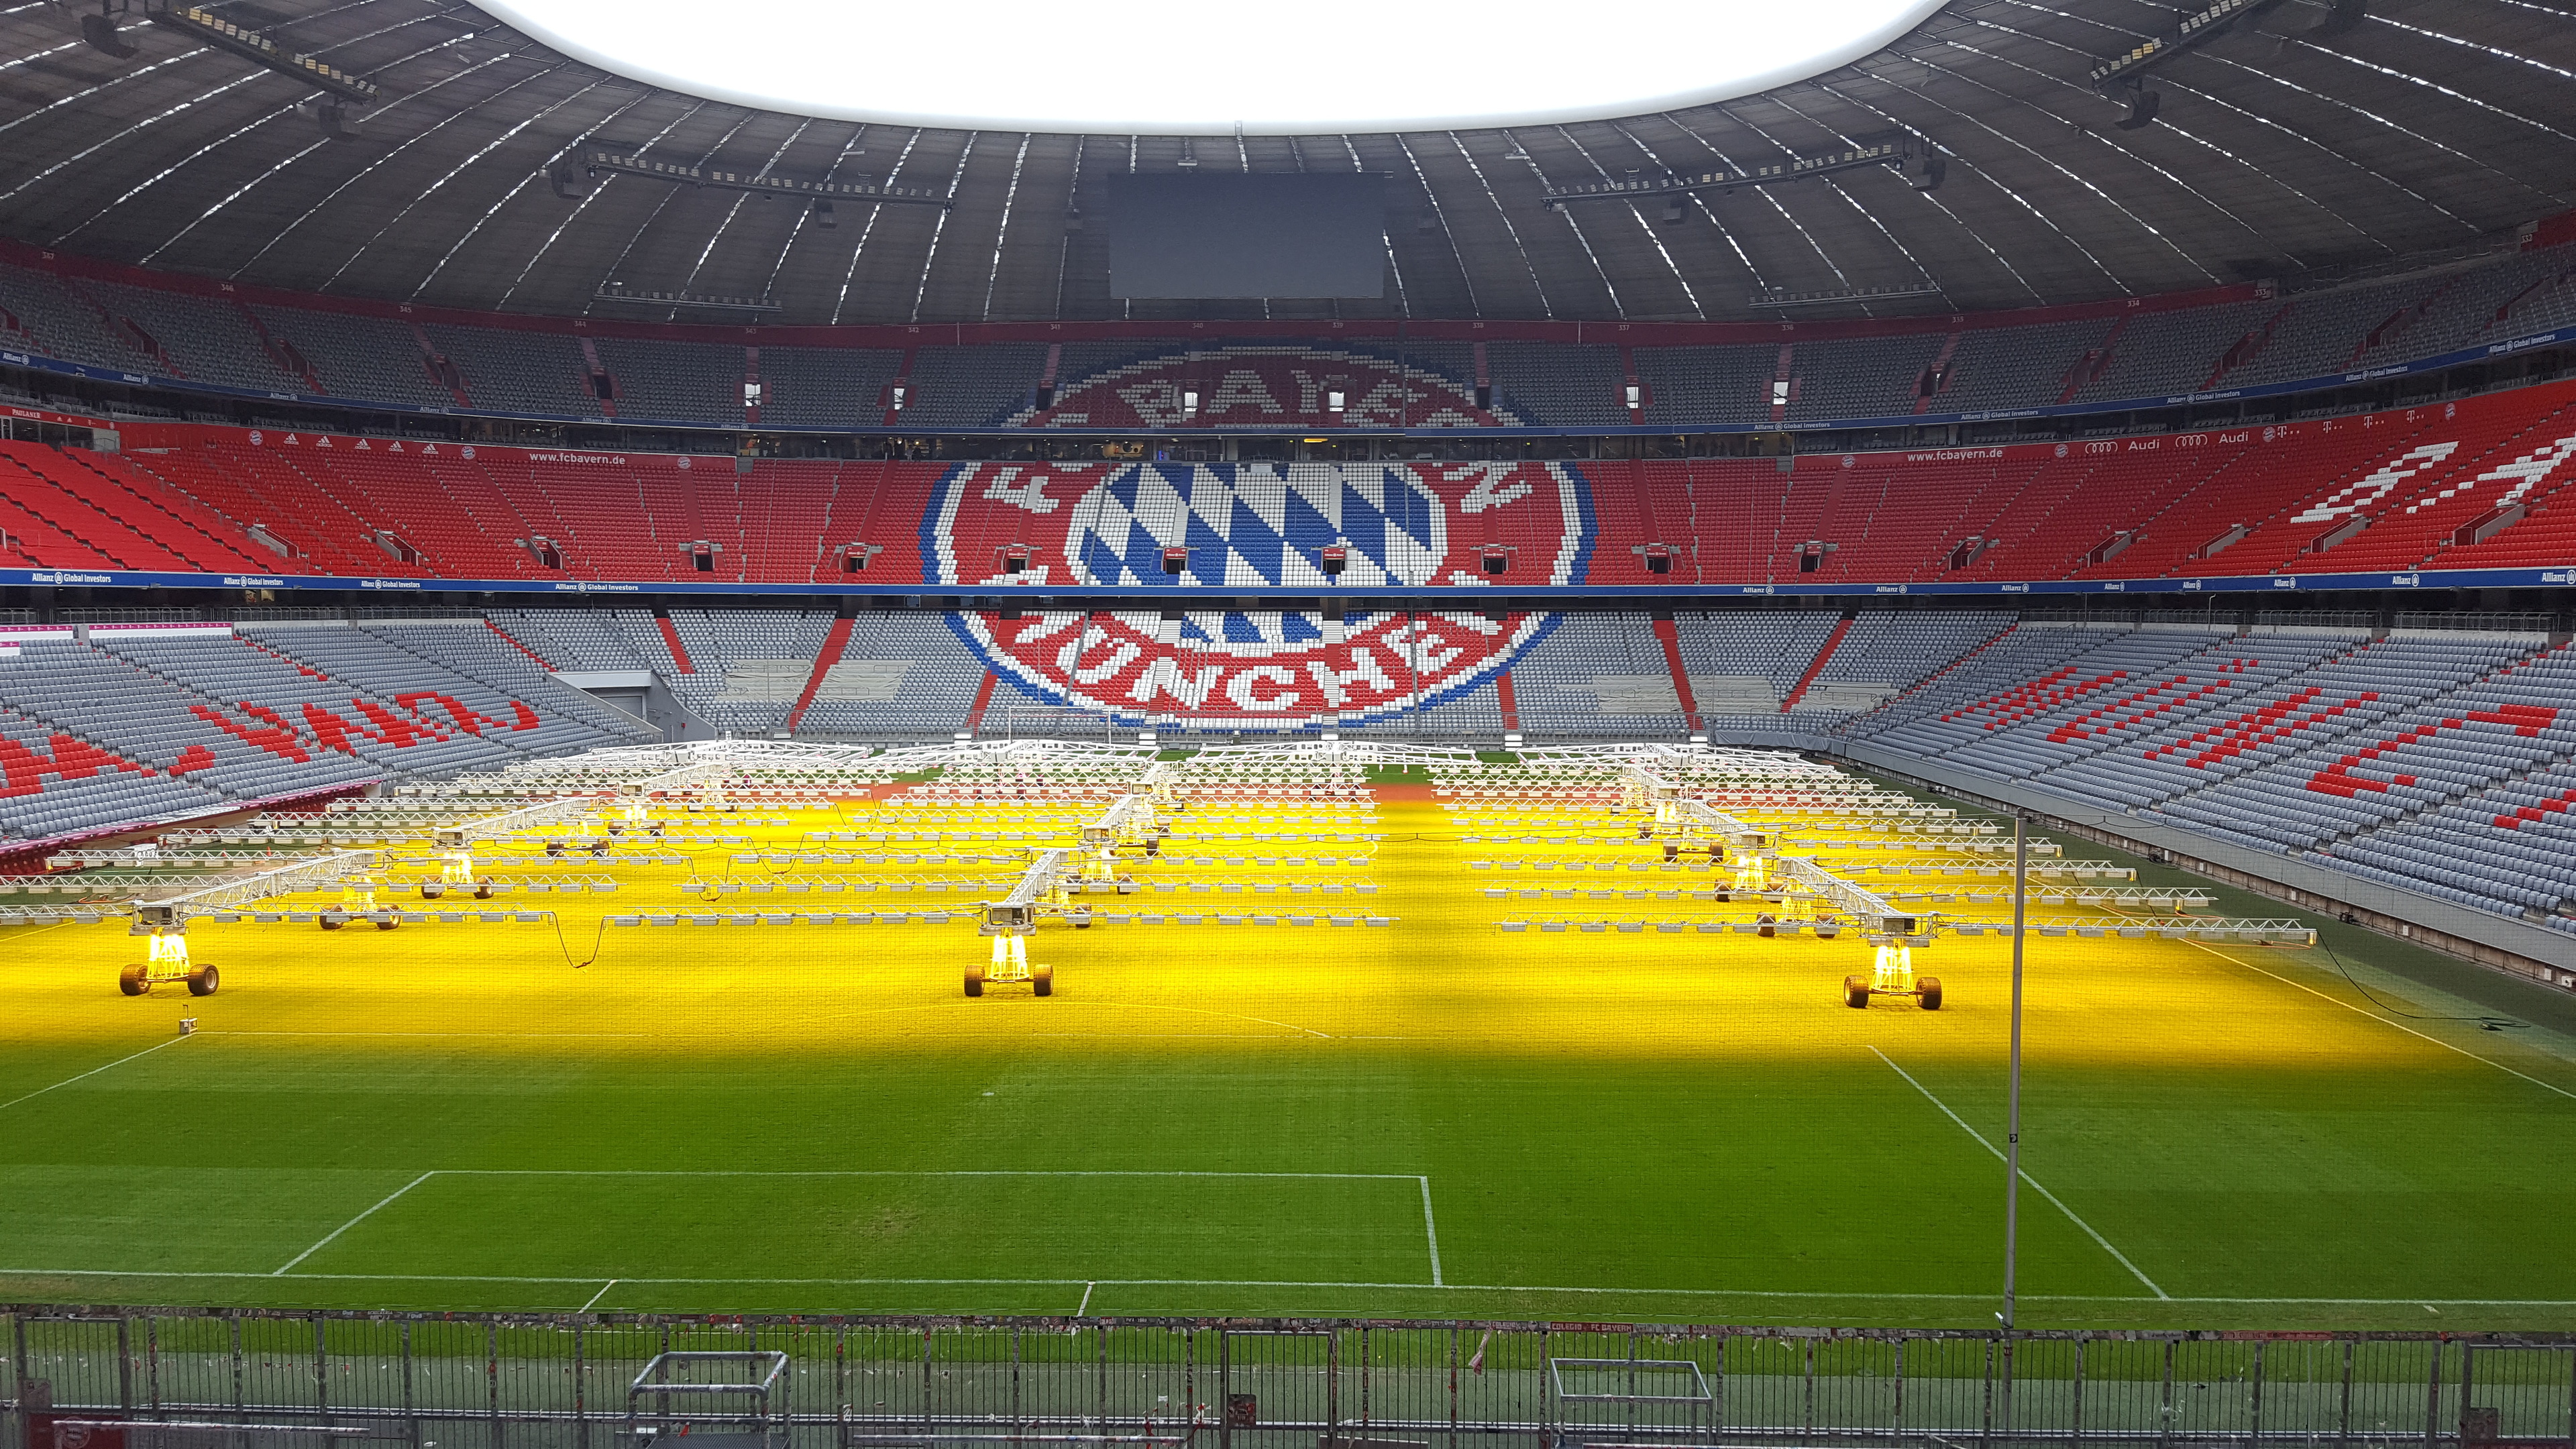 FC Bayern München wohl ohne Torwart Neuer im Klassiker gegen Schalke 04 münchen